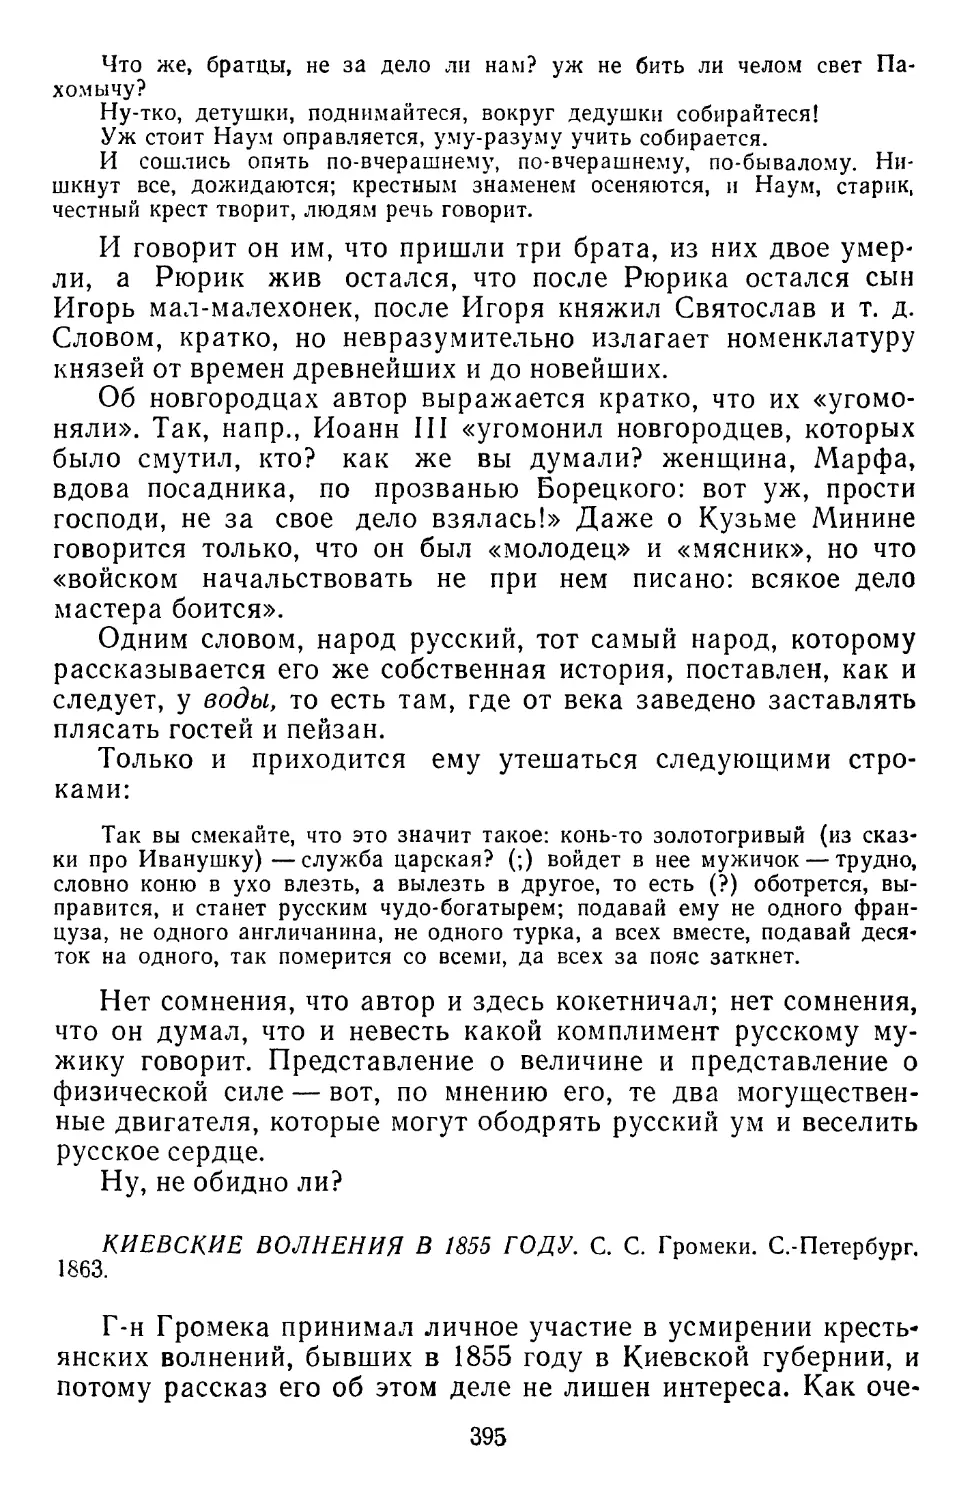 «Киевские волнения в 1855 году» С. Громеки